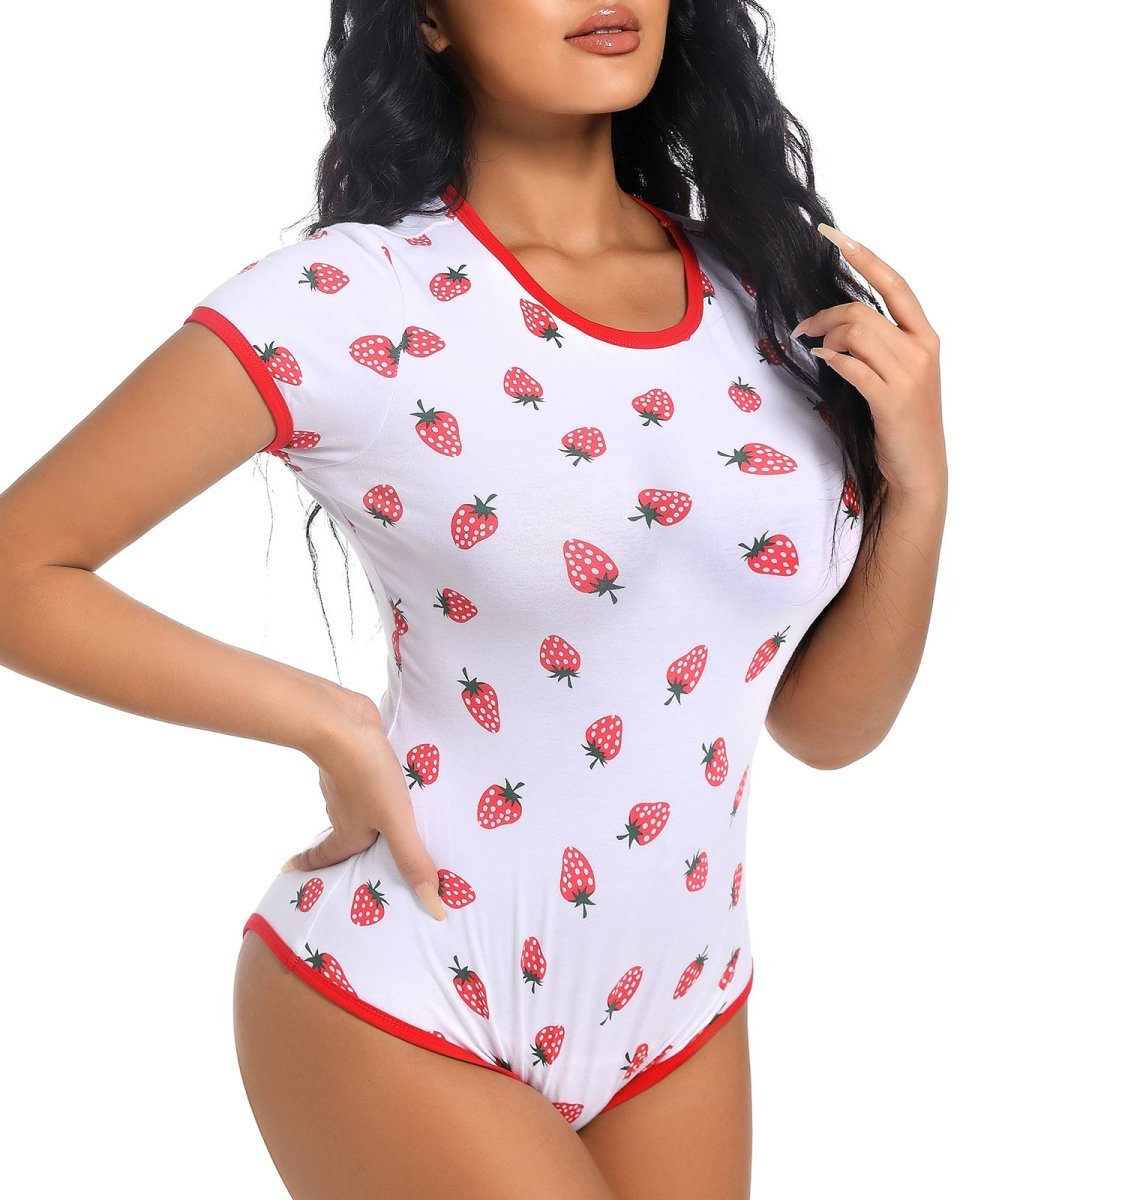 http://landofgenie.com/cdn/shop/products/landofgenie-abdl-onesie-womens-cotton-bodysuit-strawberry-print-421484.jpg?v=1708658370